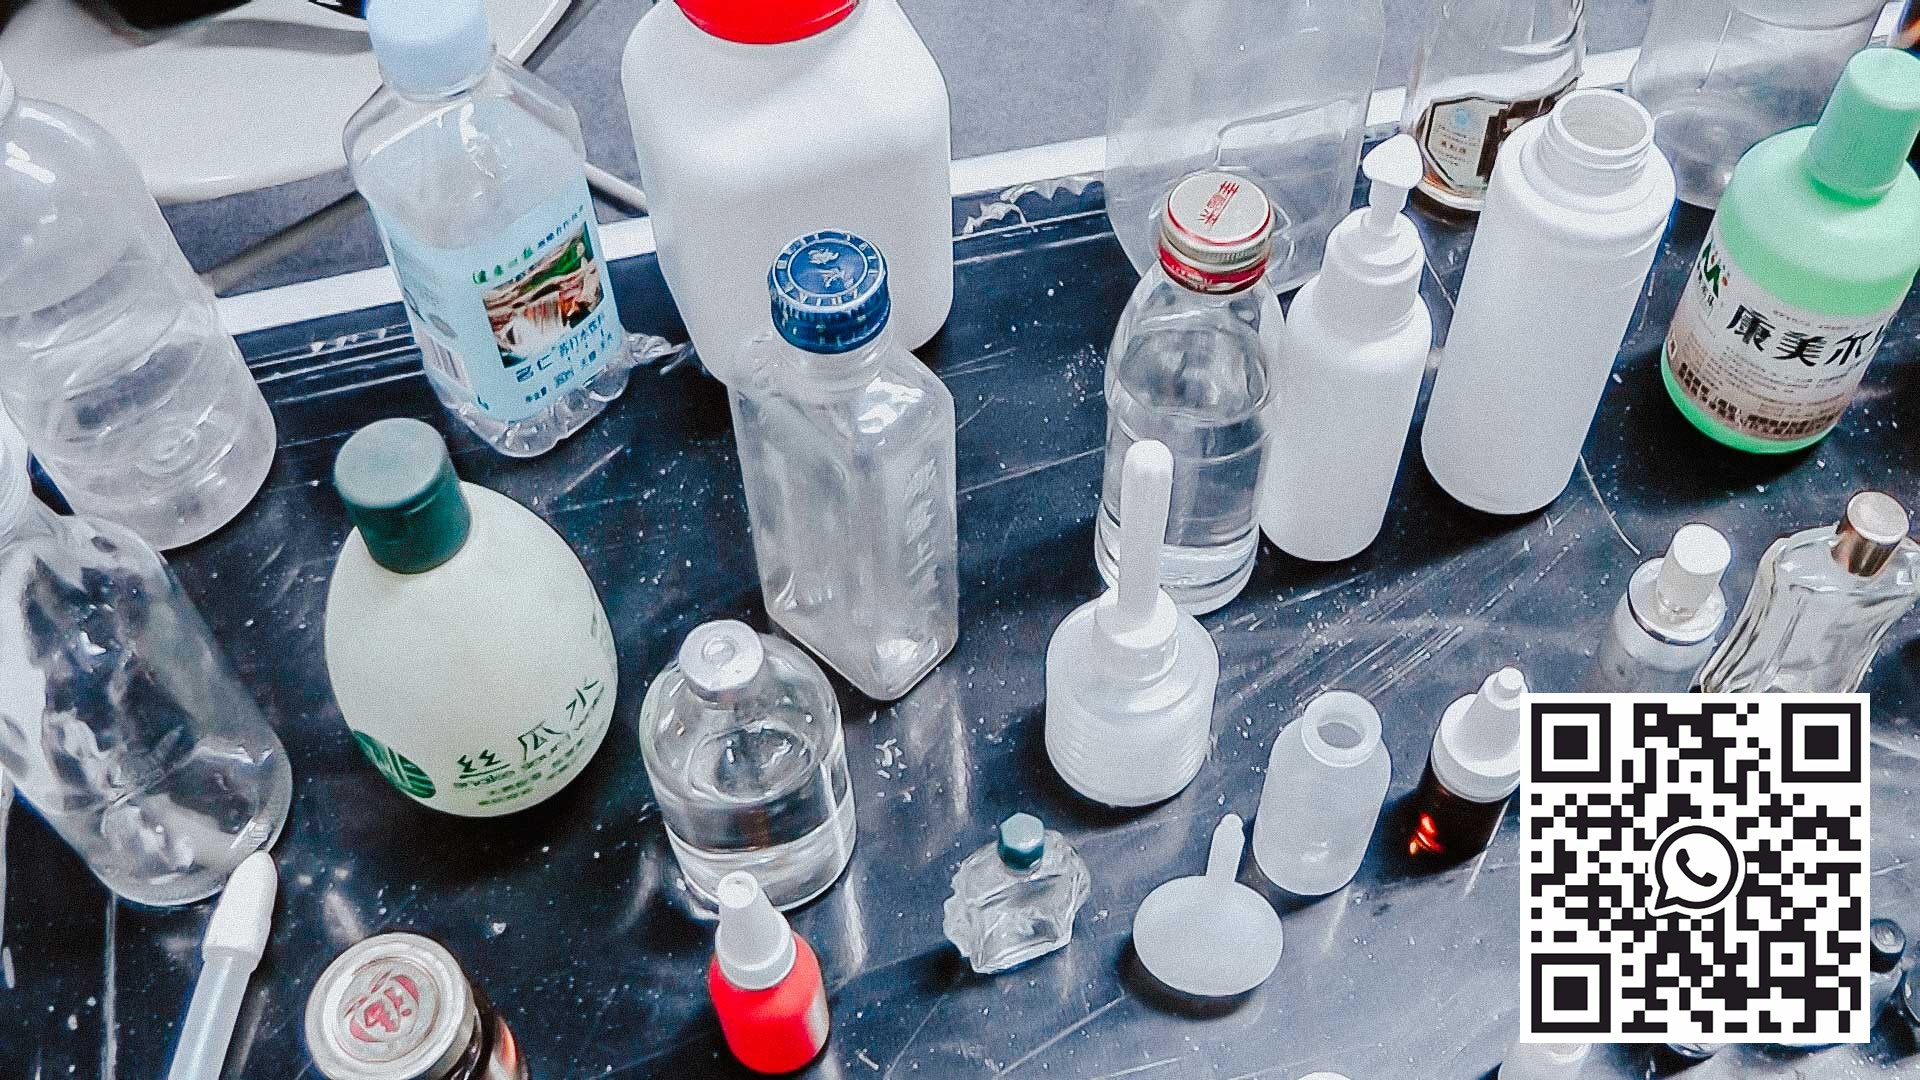 玻璃瓶和塑料瓶的各种样品，用于填充和塞满